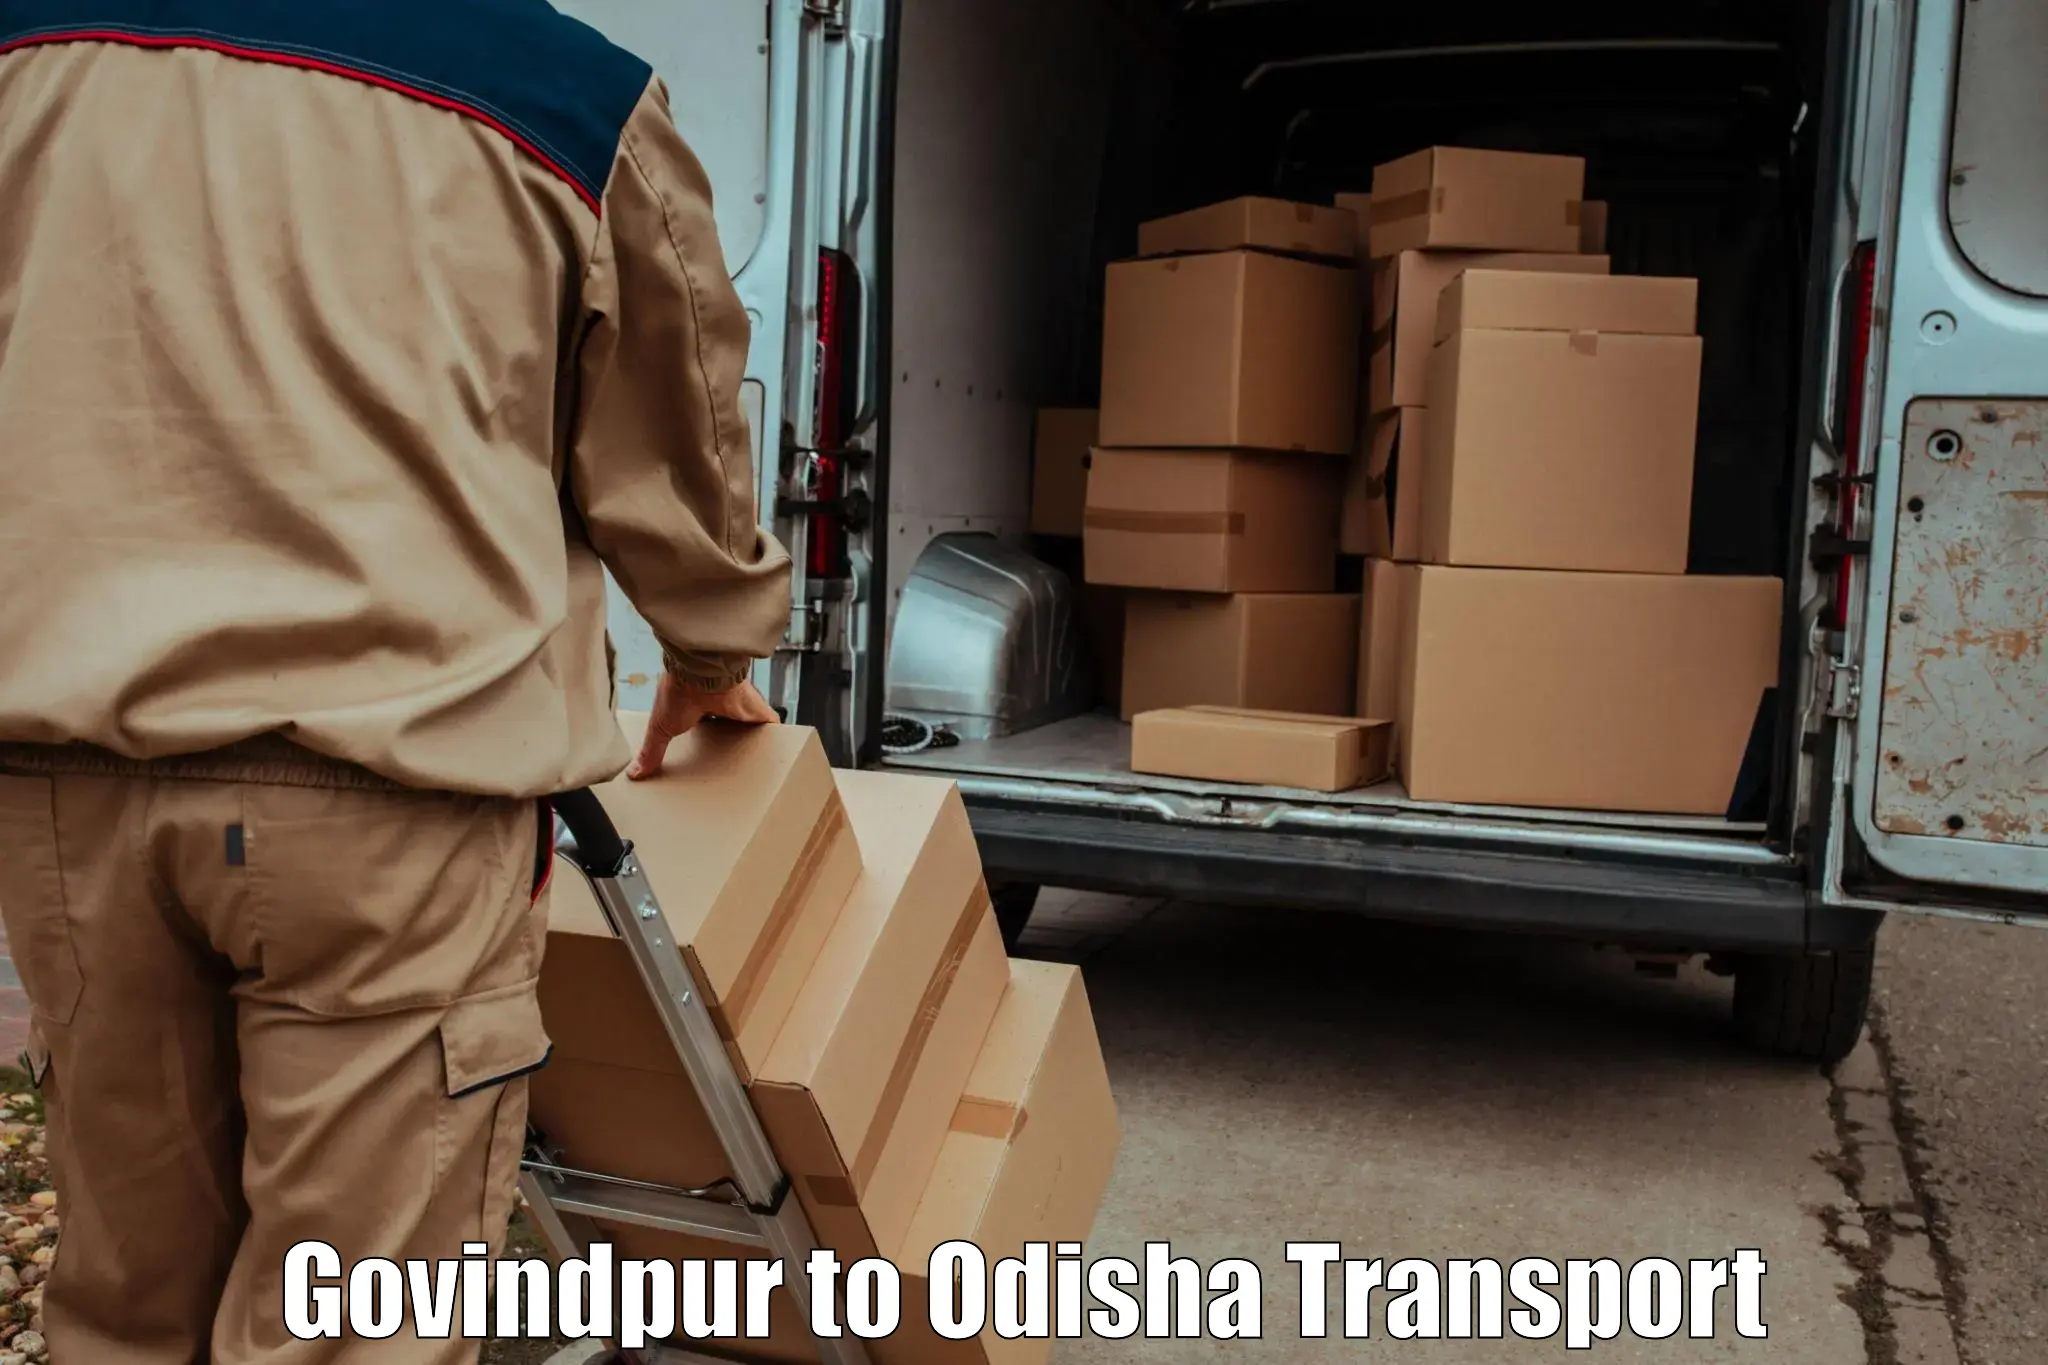 Road transport online services Govindpur to Salipur